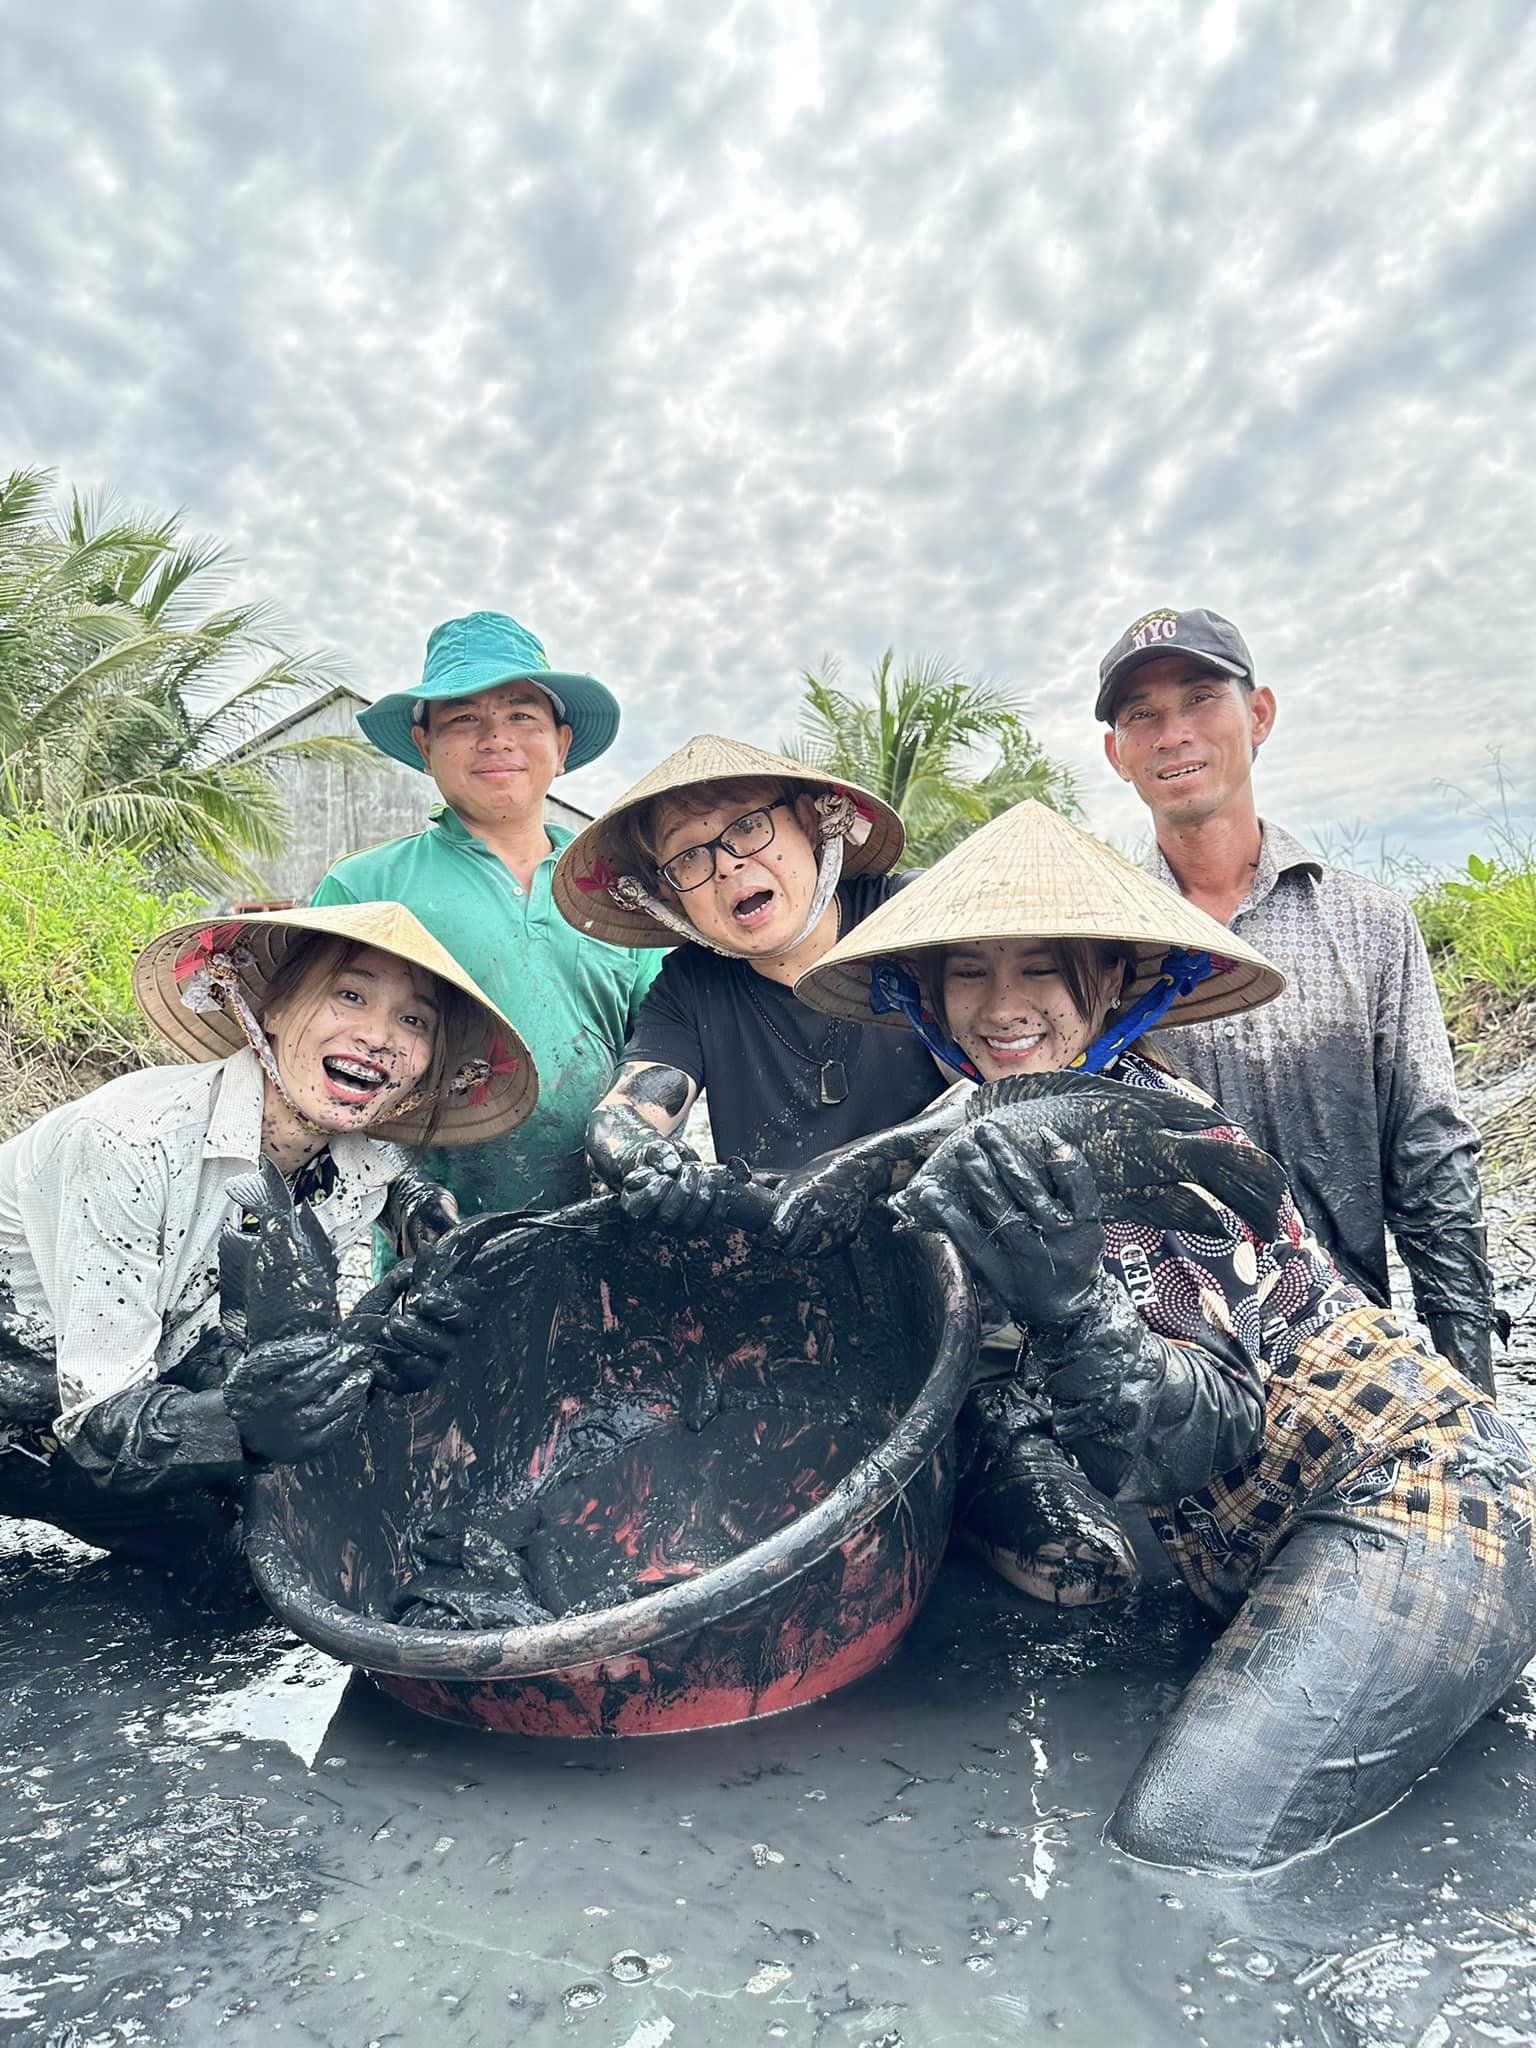 Đức Nhân đưa chồng người Nhật về Việt Nam tắm heo, lội ruộng bắt cá mặc sình bùn khiến netizen thích thú - ảnh 2